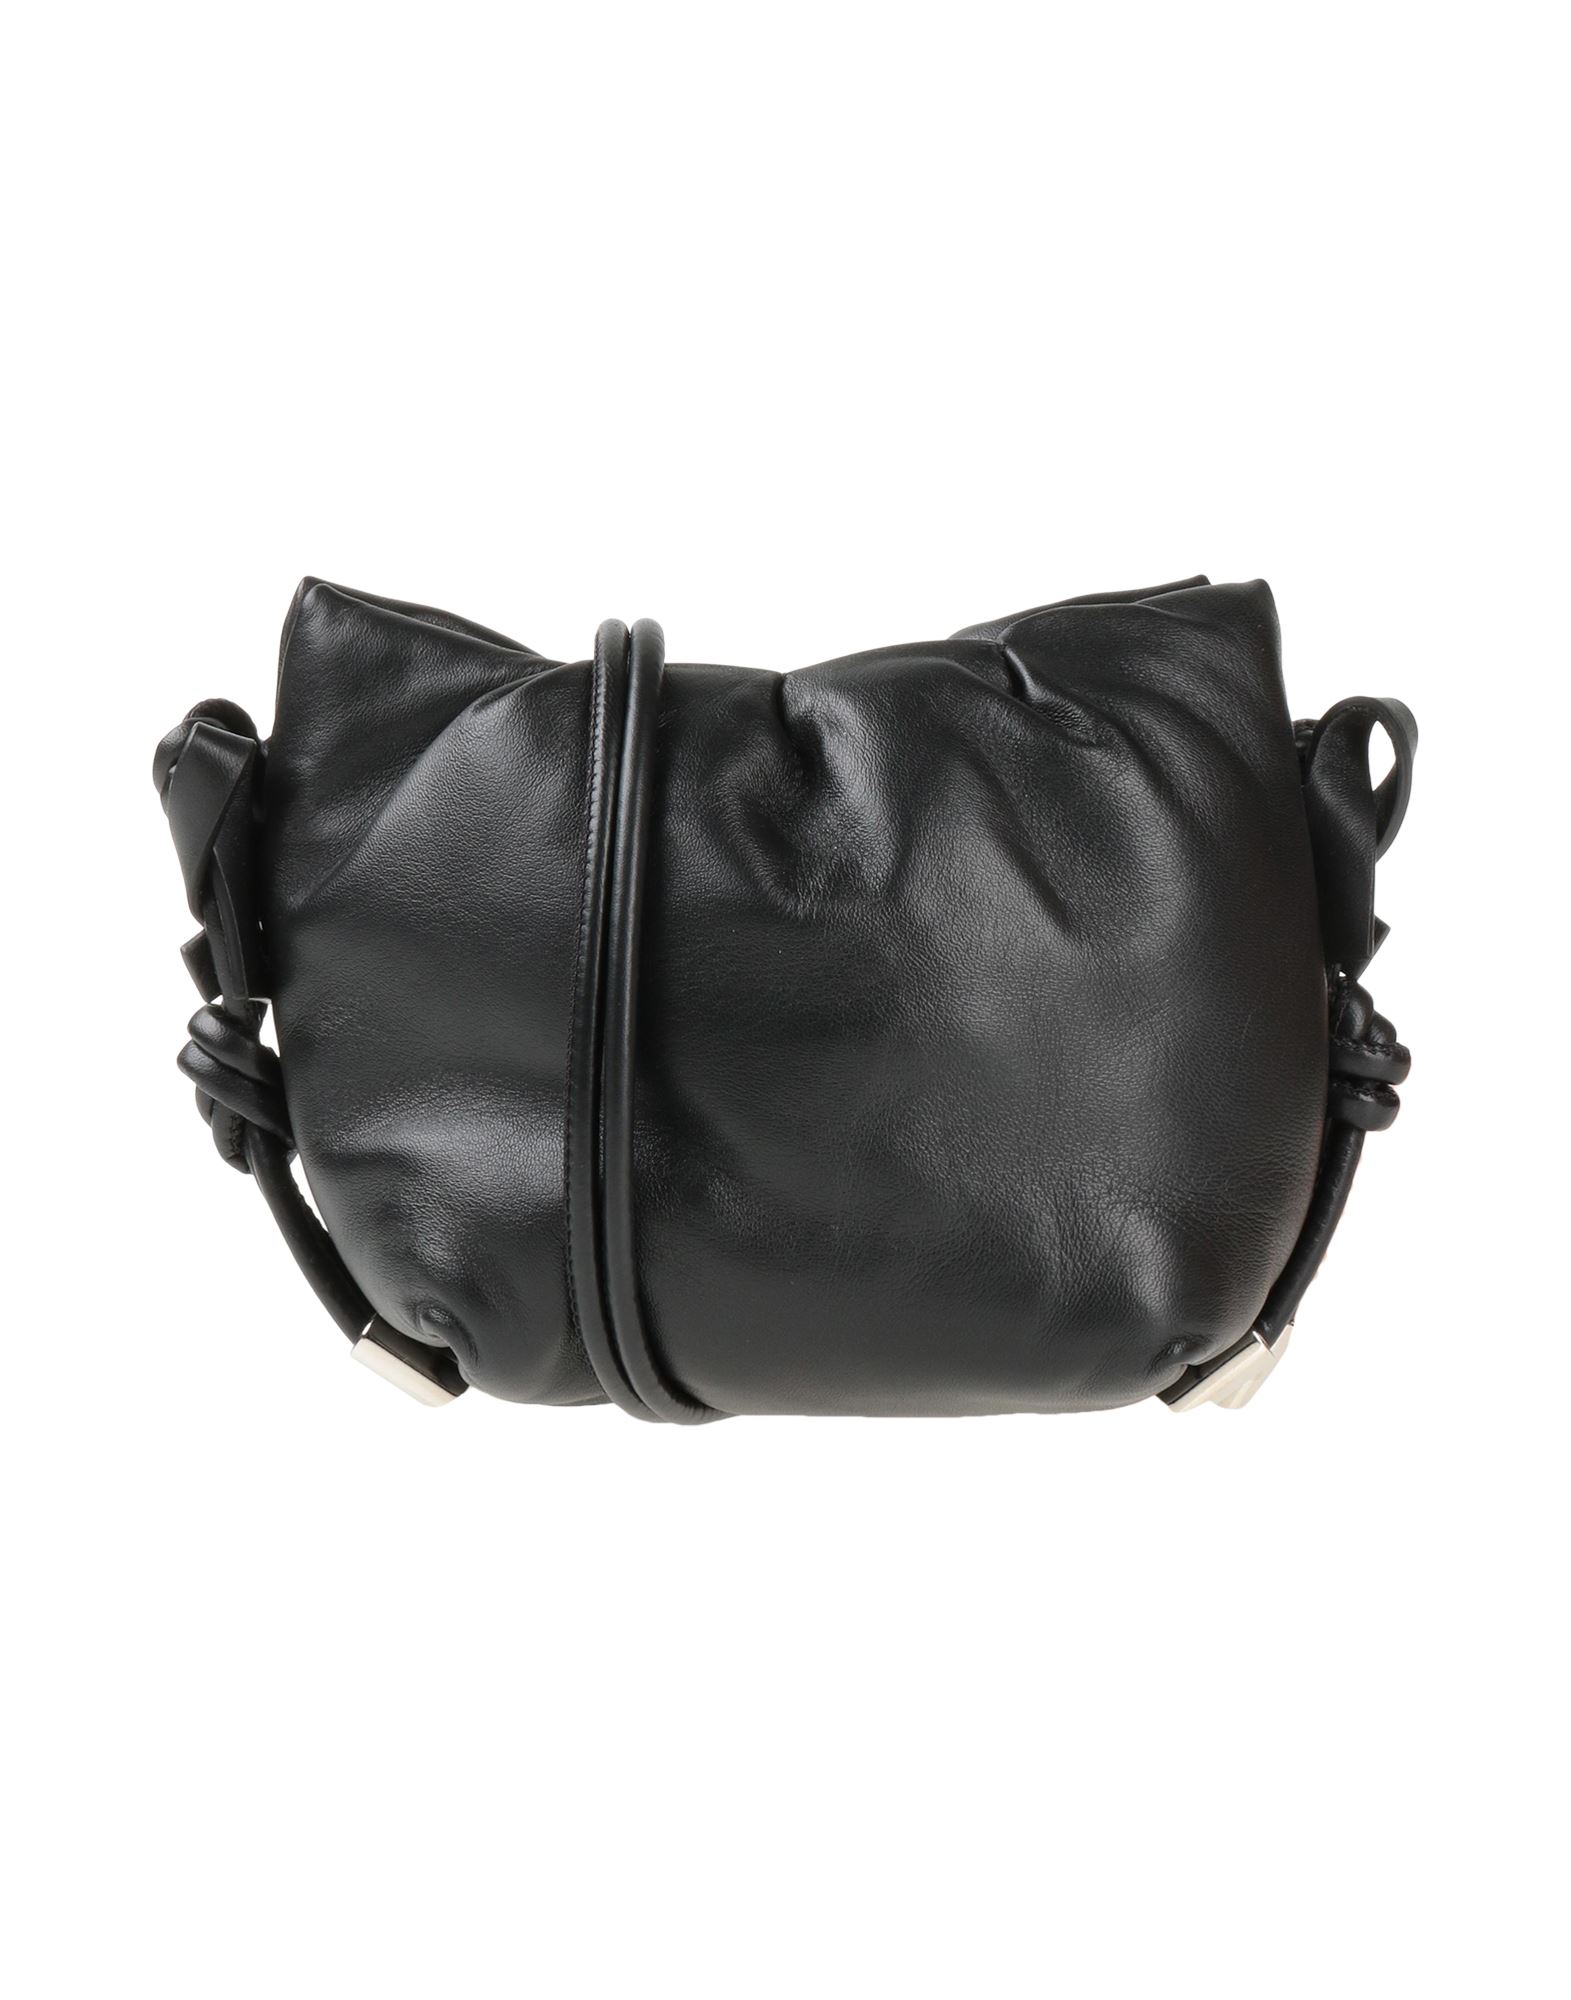 Dorothee Schumacher Handbags In Black